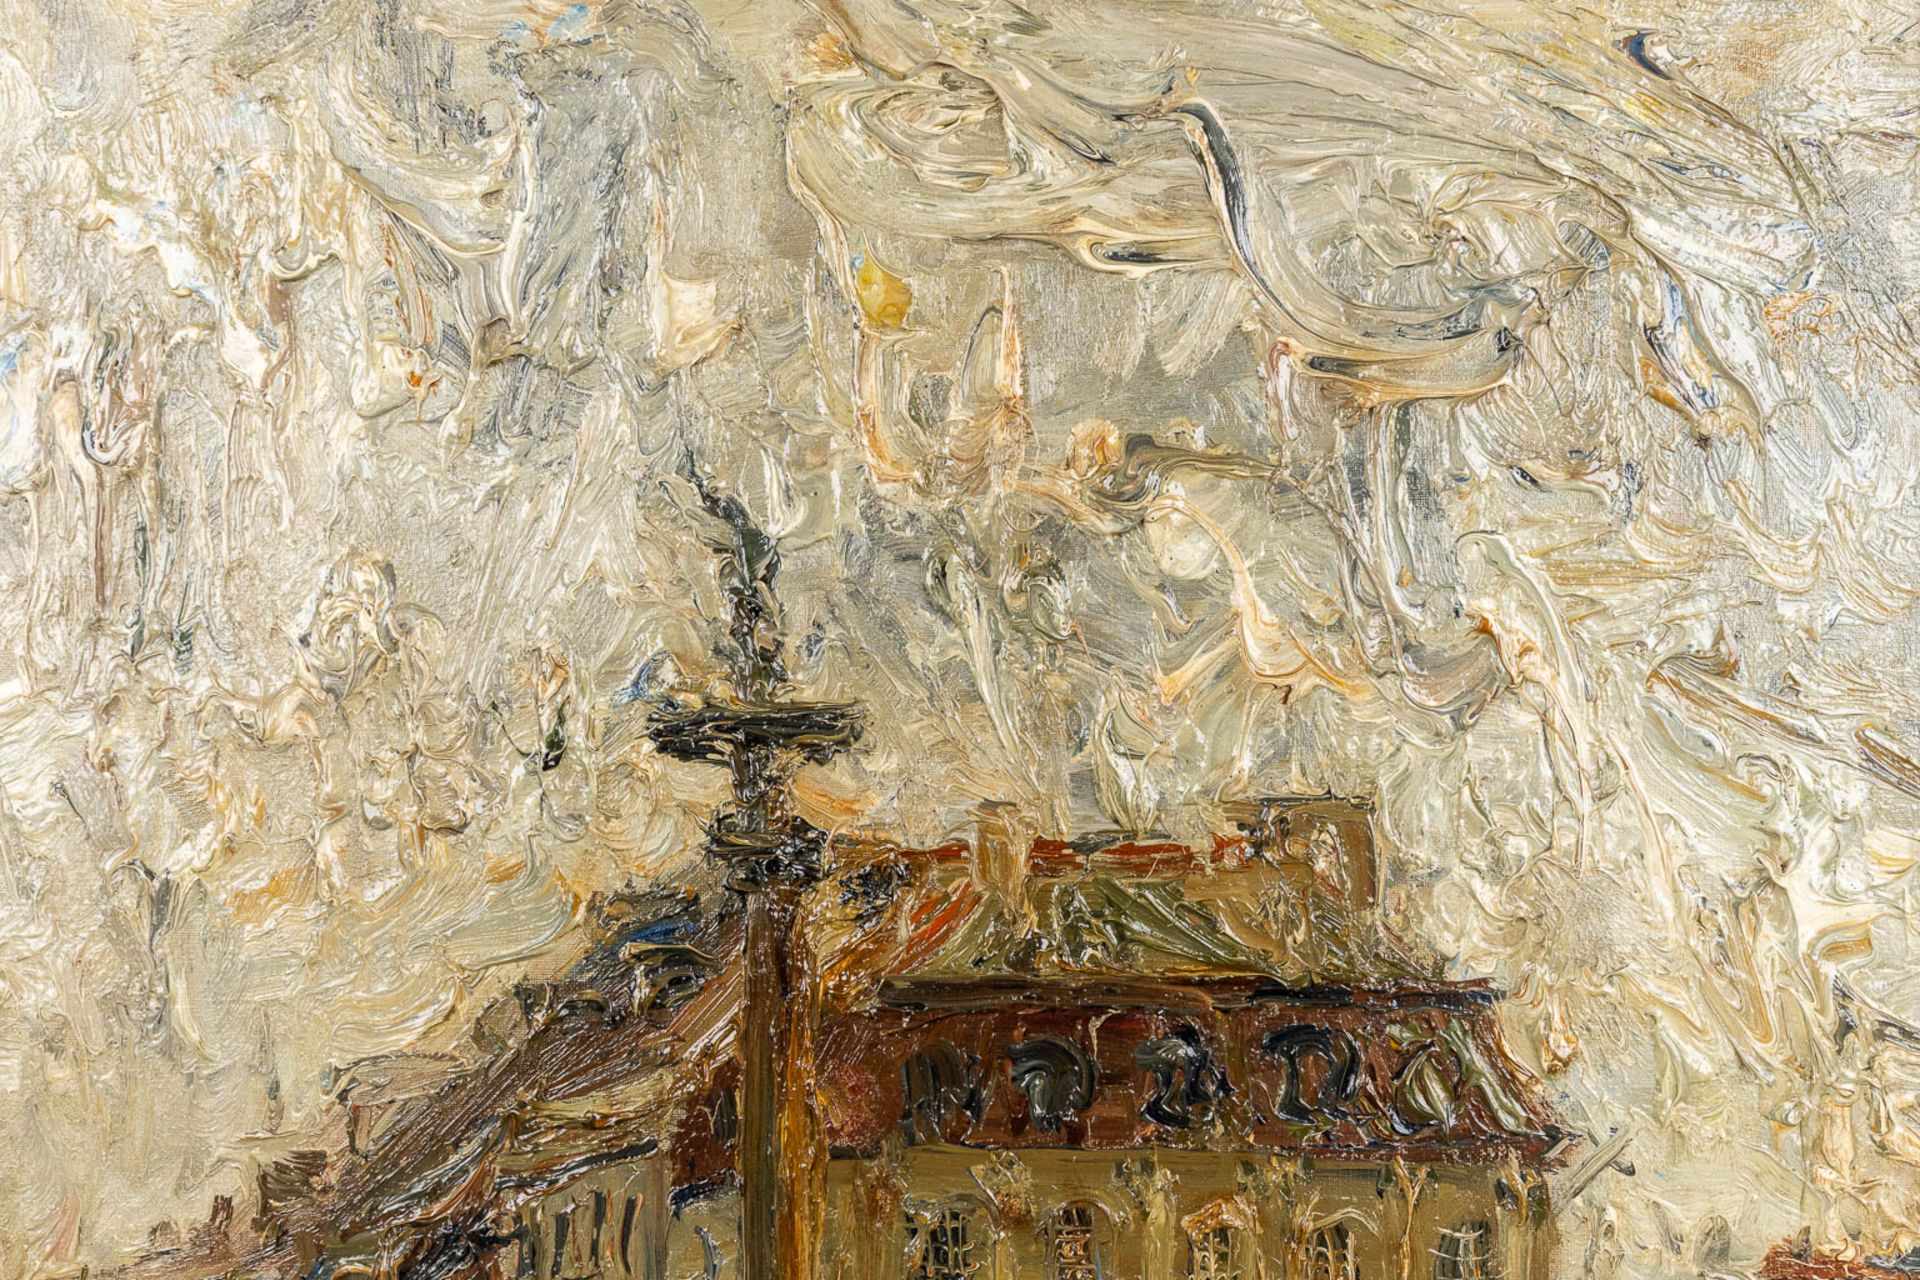 Wlodzimierz ZAKRZEWSKI (1916-1992) 'Plac Zamkowy, Warschaw' oil on canvas. 1967. (W:100 x H:72 cm) - Image 6 of 8